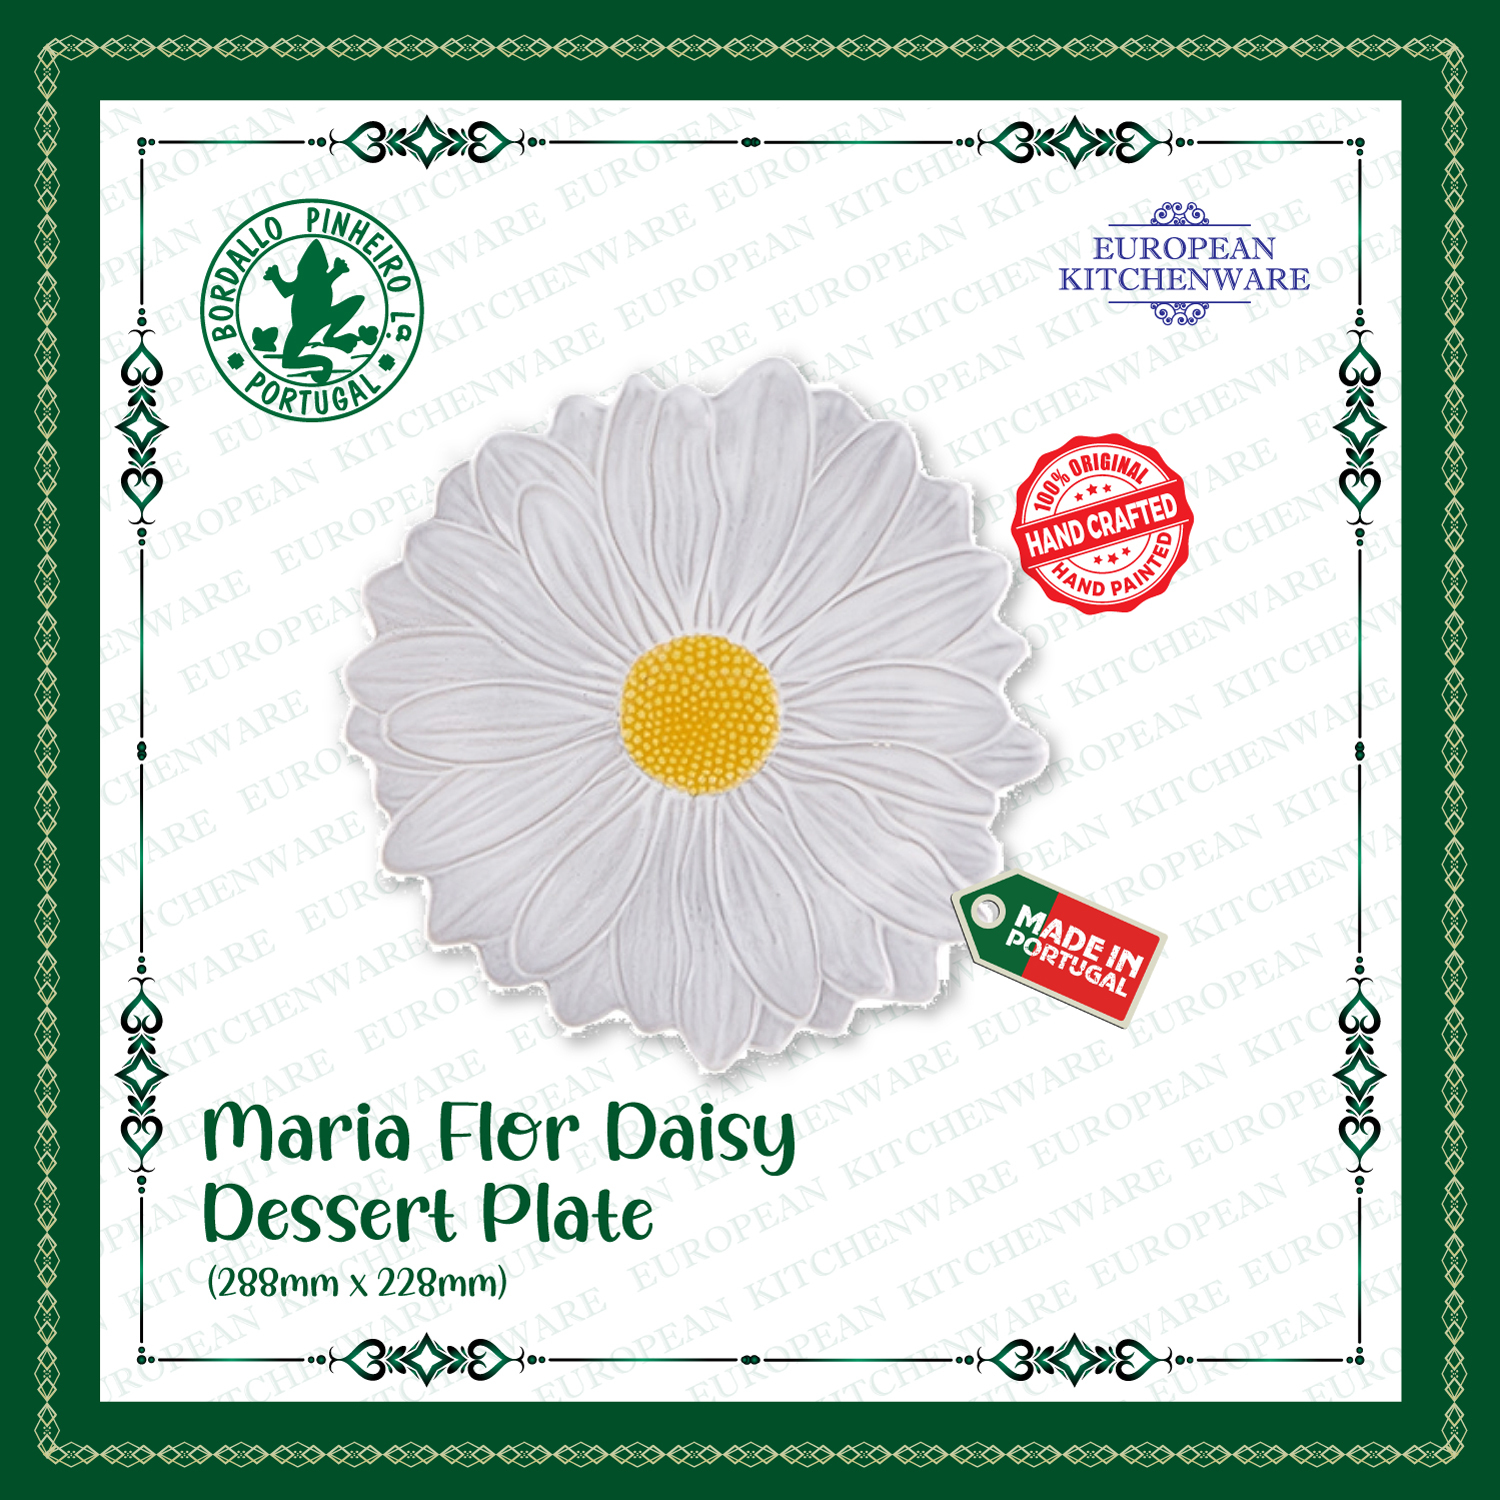 Maria-Flor-daisy-dsp.jpg